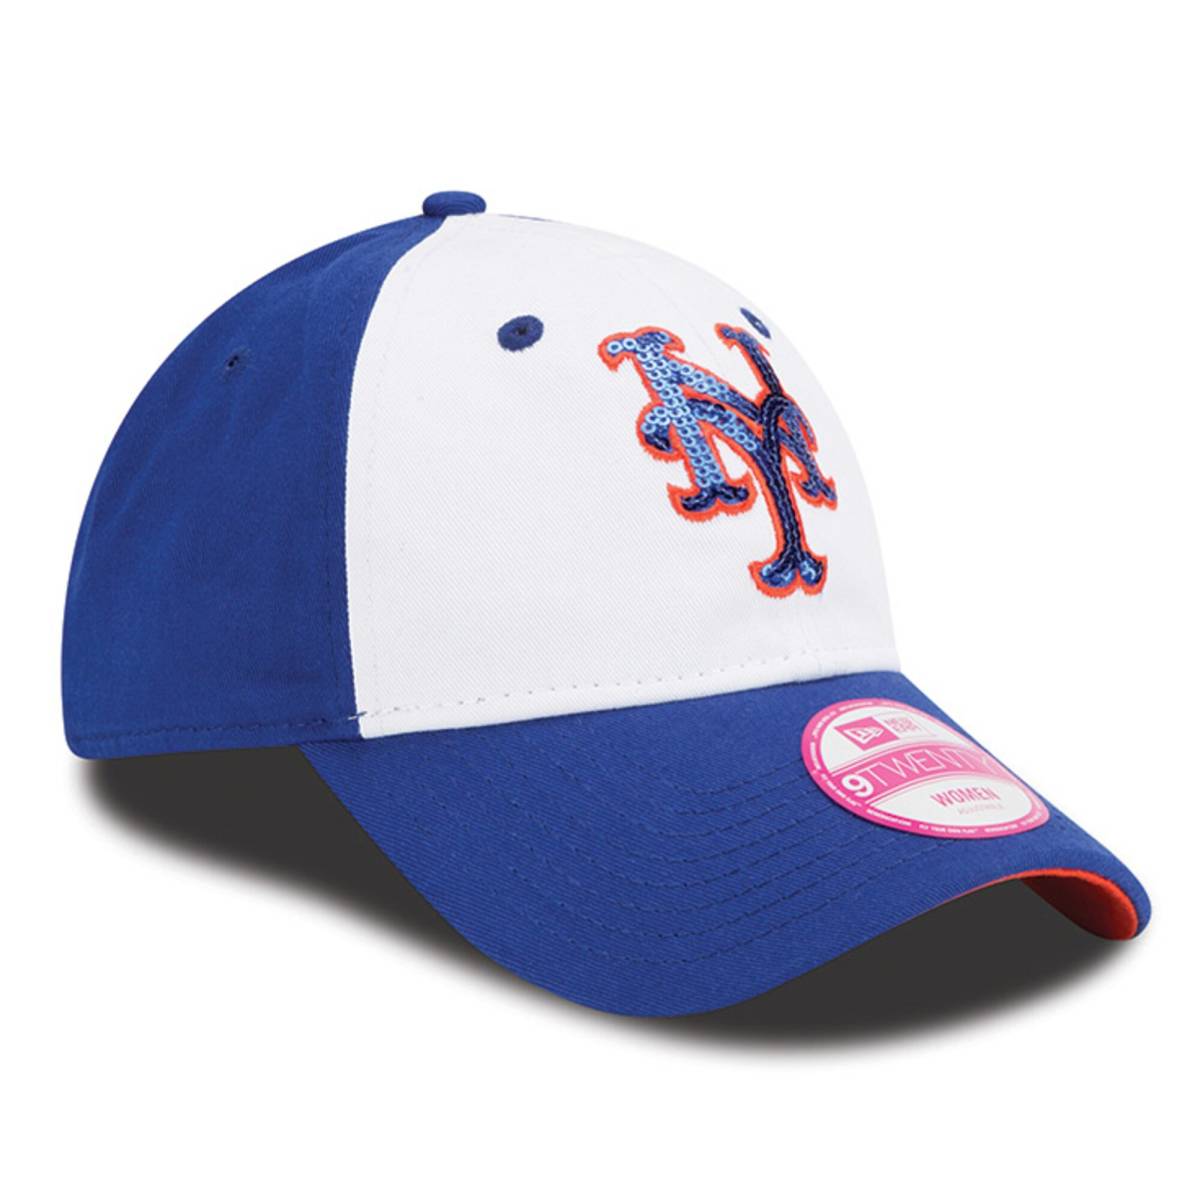 日本未入荷 USA正規品 NEWERA ニューエラ 9TWENTY レディース Glimmer グリマー 帽子 キャップ NY Mets メッツ MLB スパンコール_画像3